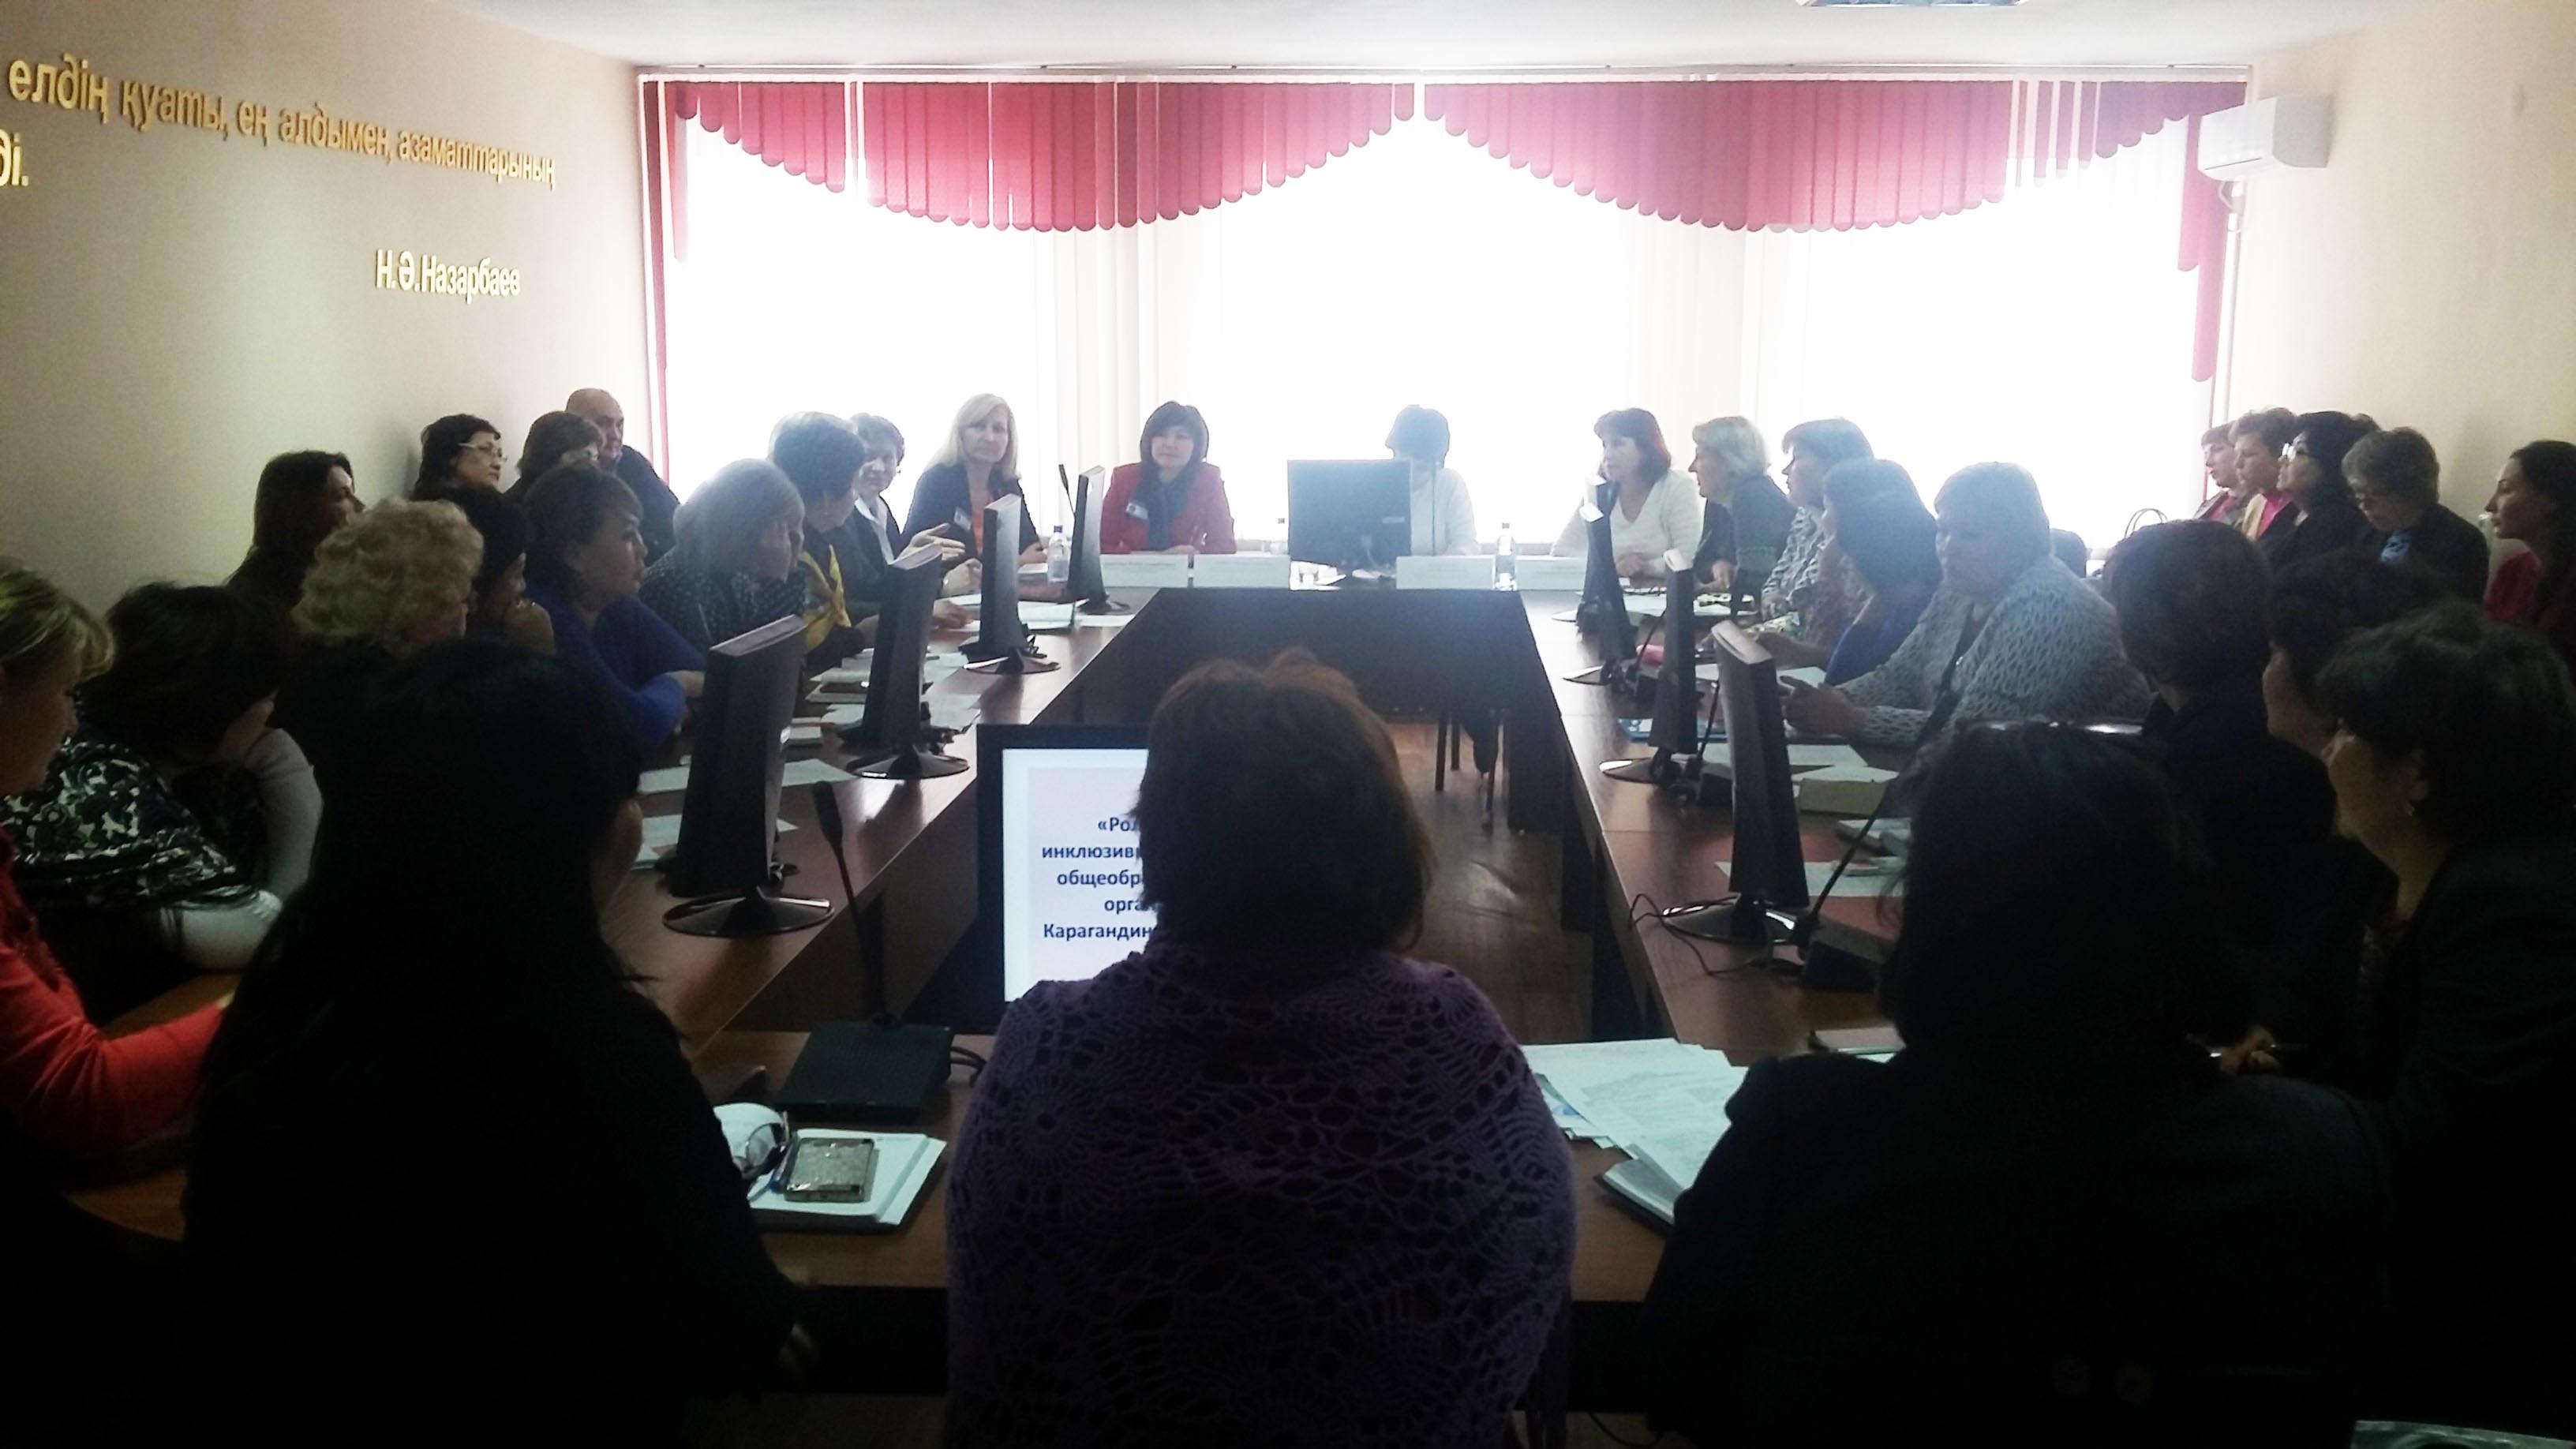 Фото - круглый стол Роль ПМПК в инклюзивной ориентации общеобразовательных организаций Карагандинской области